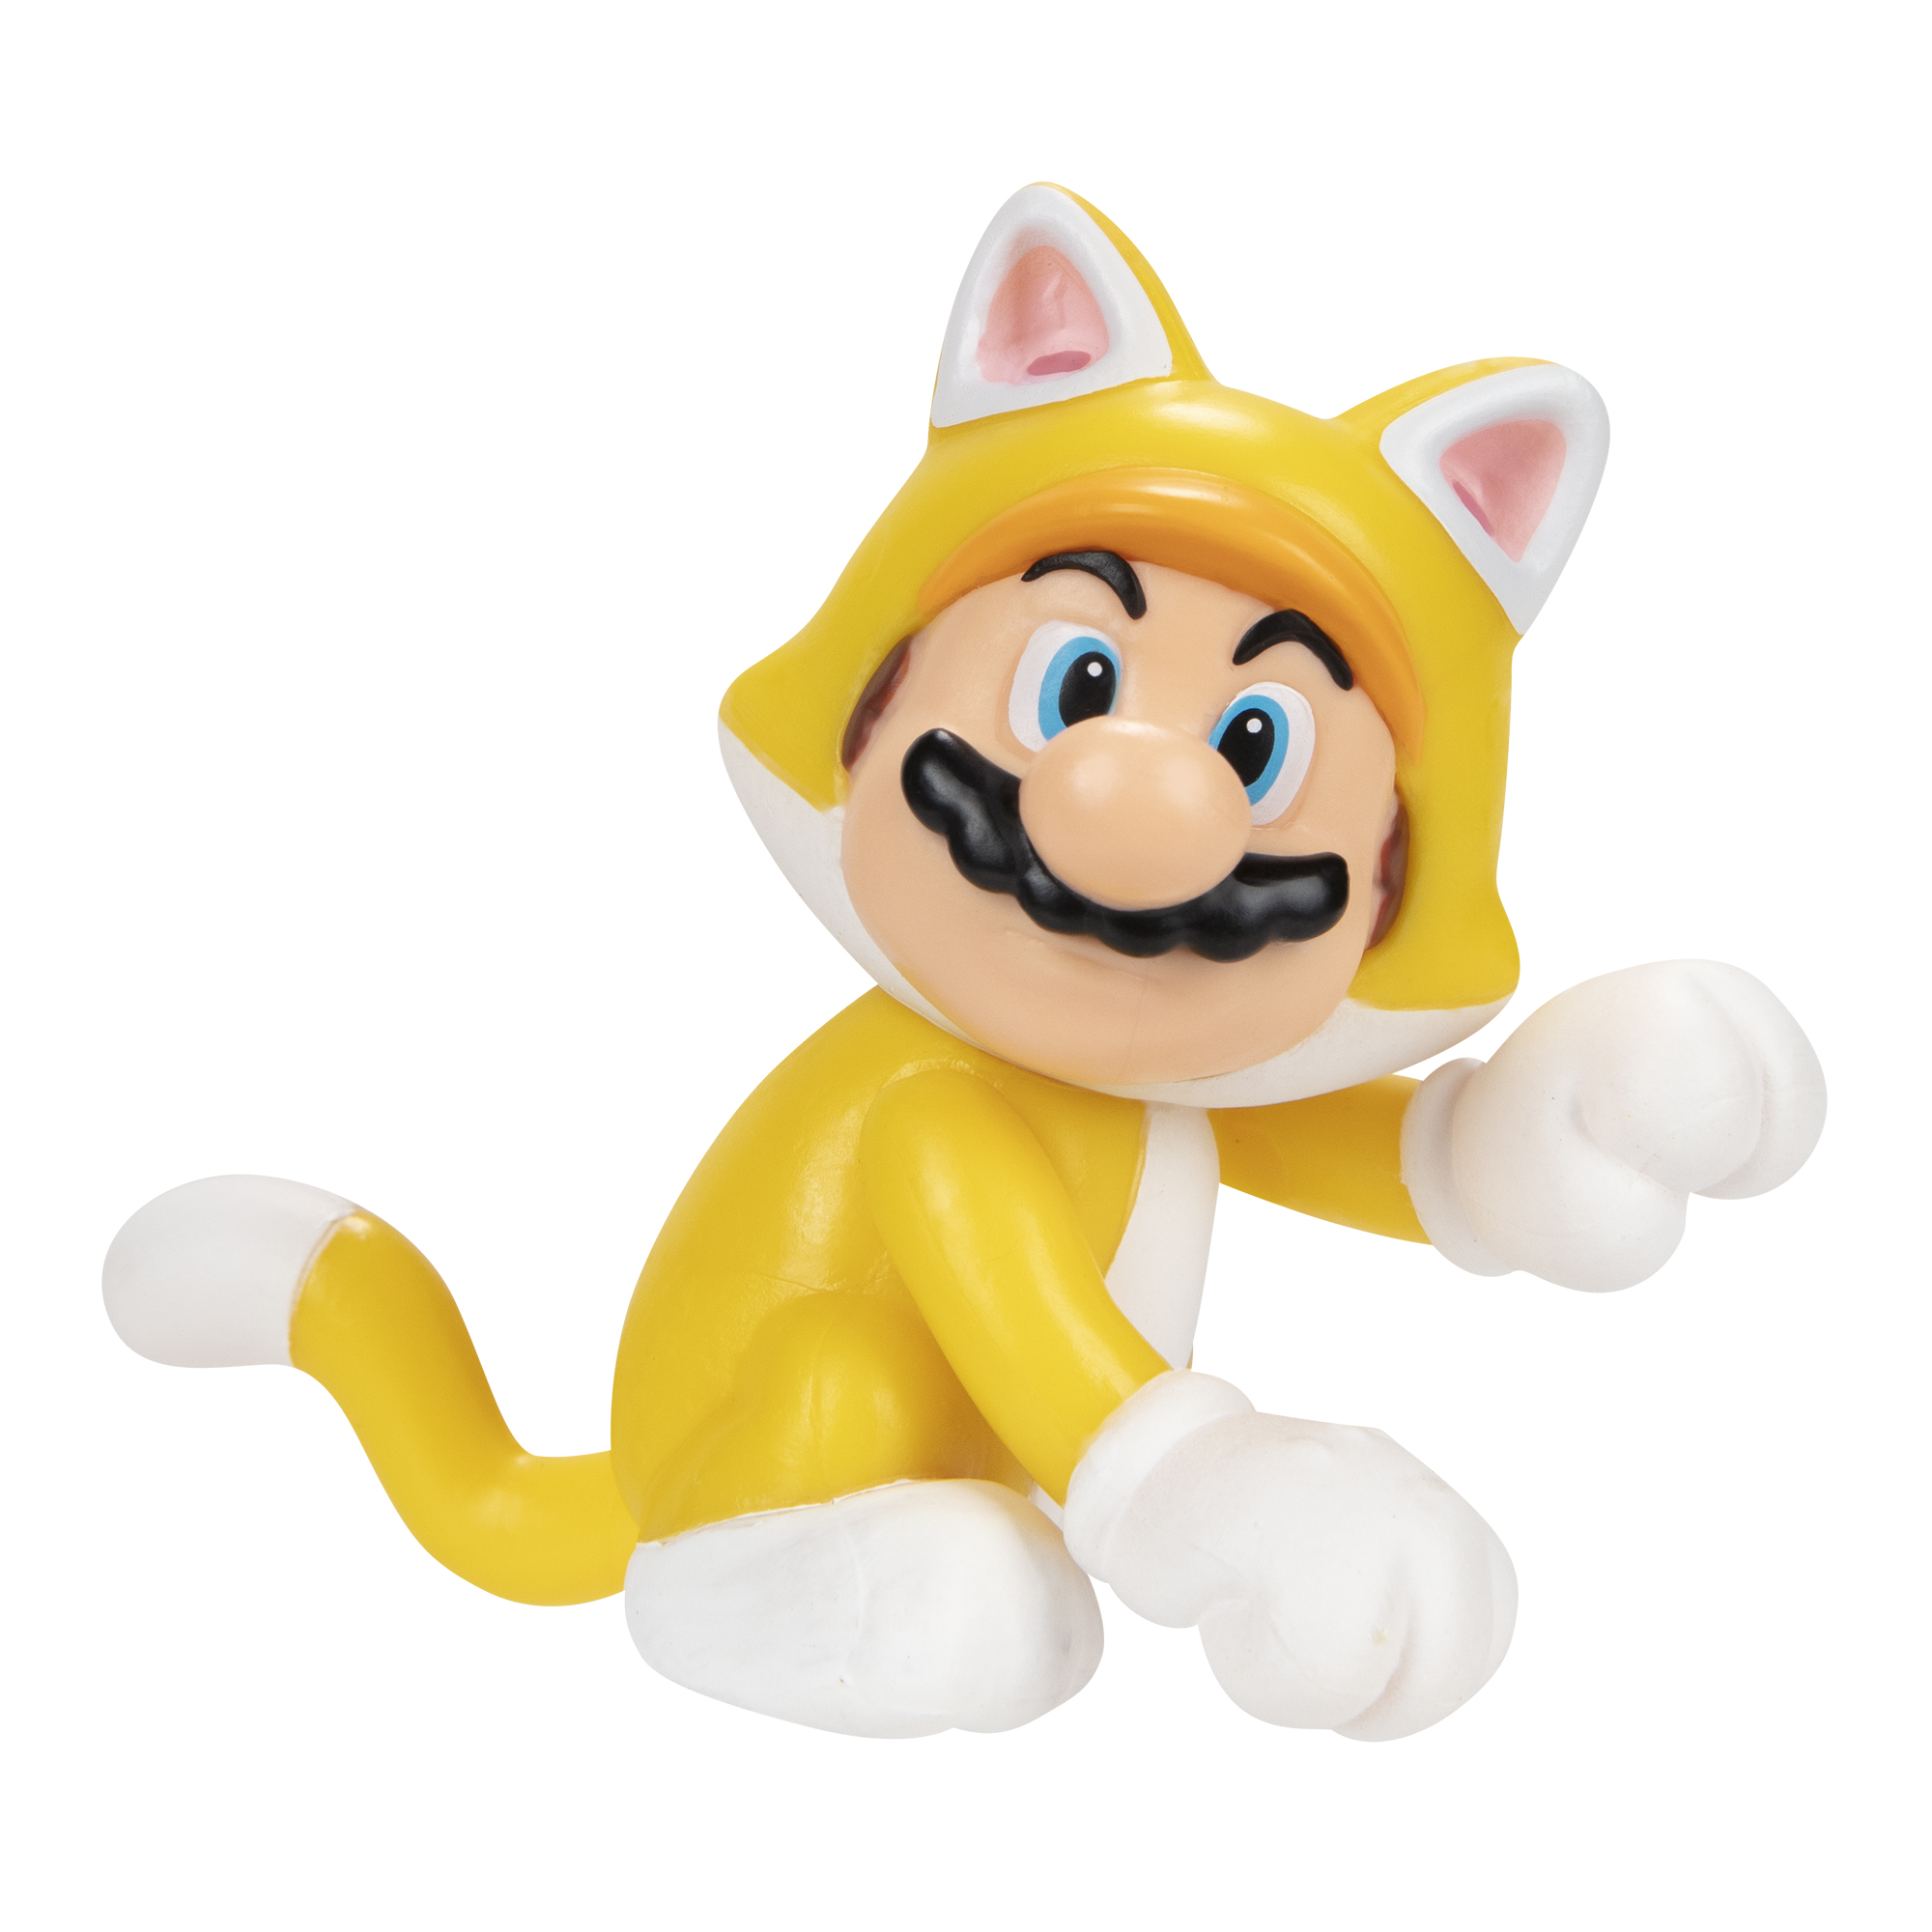 SUPER MARIO Nintendo Super Mario Mario, cm 6,5 Spielware Cat Figur